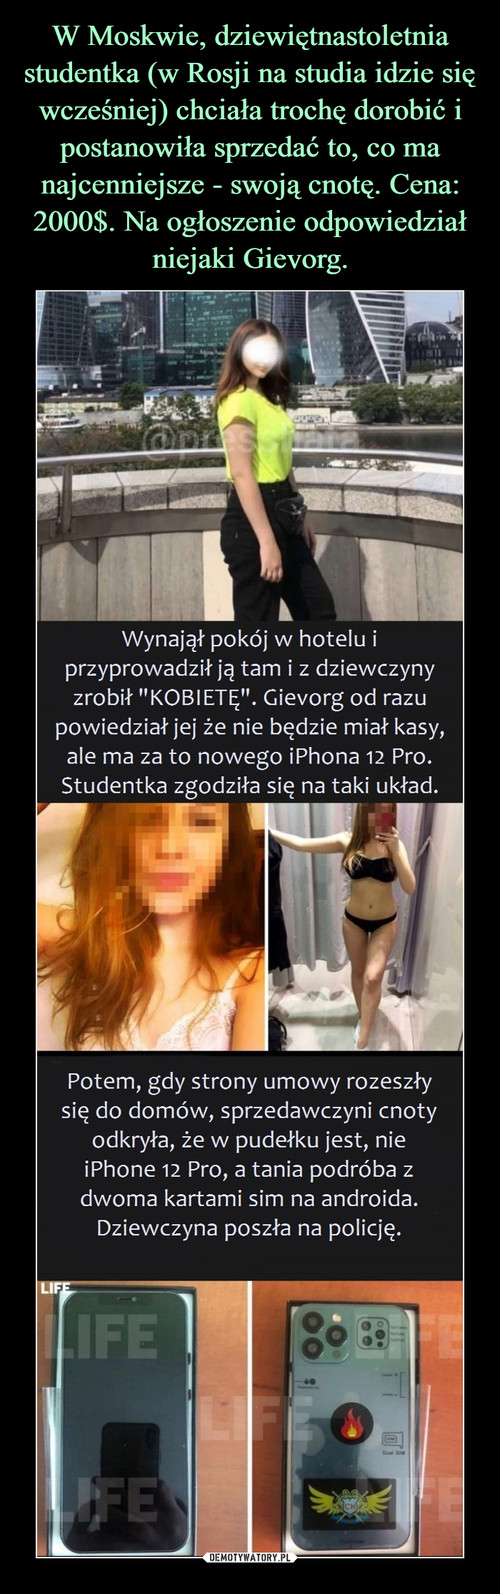 W Moskwie, dziewiętnastoletnia studentka (w Rosji na studia idzie się wcześniej) chciała trochę dorobić i postanowiła sprzedać to, co ma najcenniejsze - swoją cnotę. Cena: 2000$. Na ogłoszenie odpowiedział niejaki Gievorg.